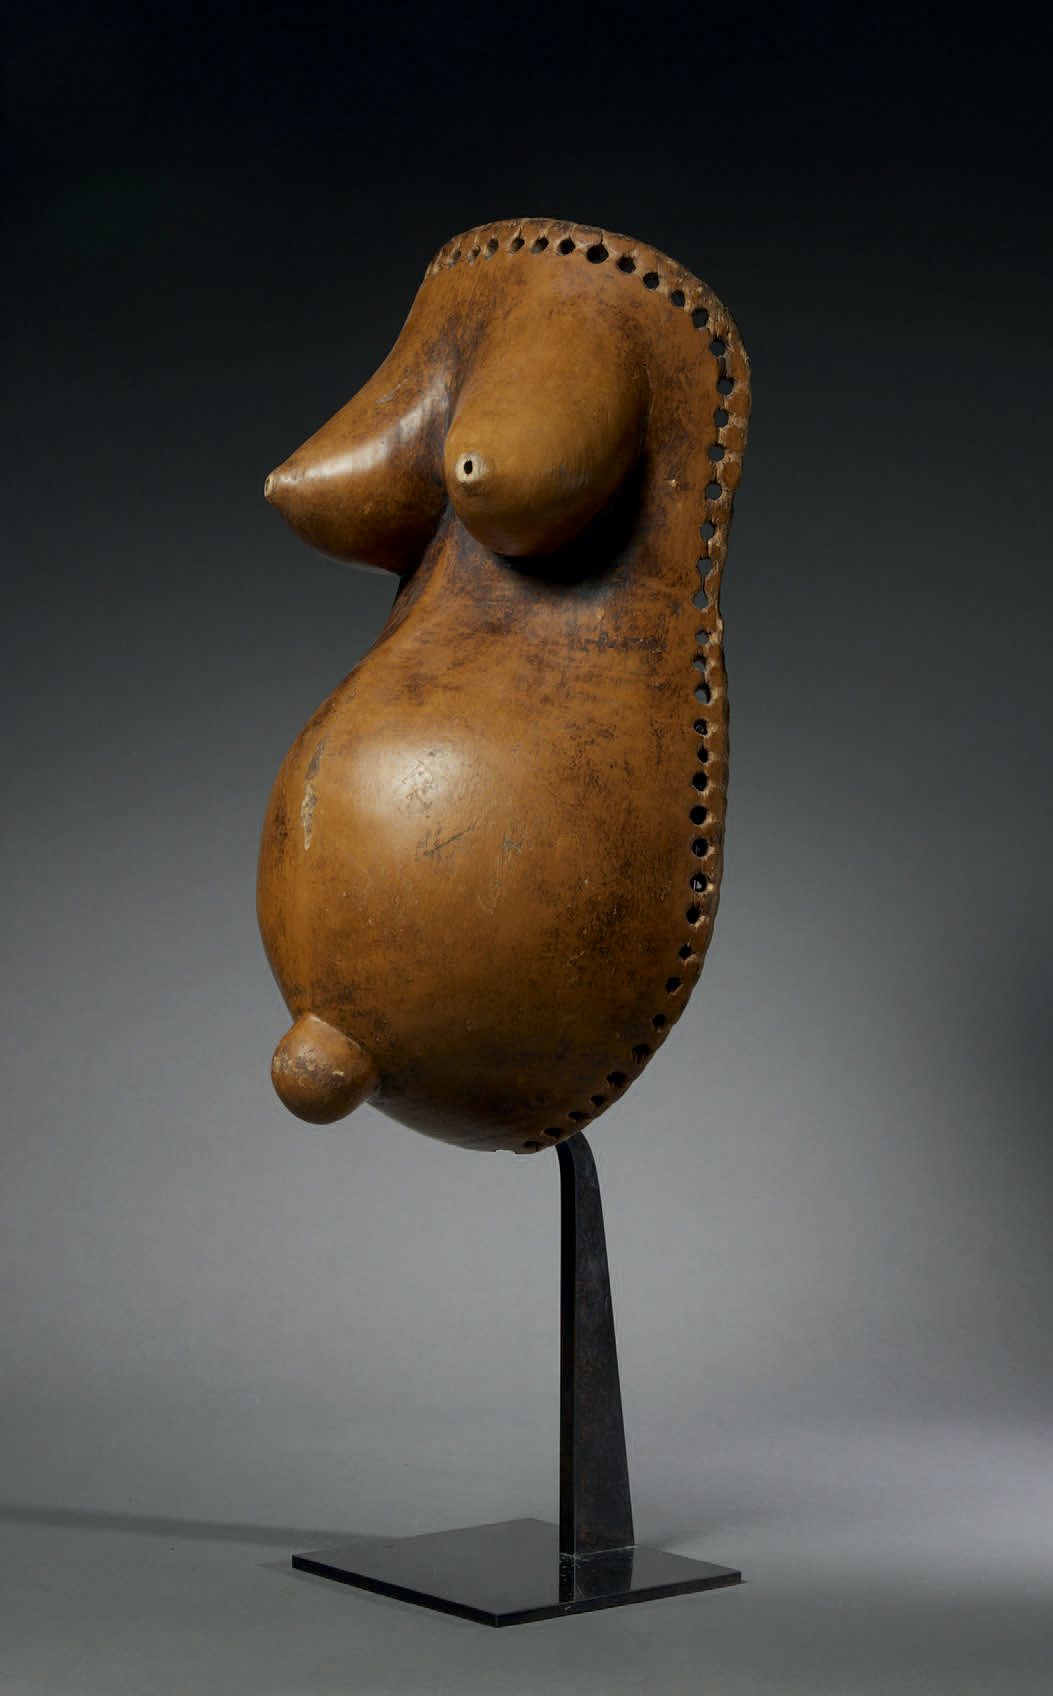 Null 马孔德肚皮面具
莫桑比克
木头
高45.5厘米
女性身体面具是启动仪式的一个重要部分。它们代表了一个年轻的孕妇，通常雕刻有肿胀的腹部和丰满的乳房，并饰&hellip;